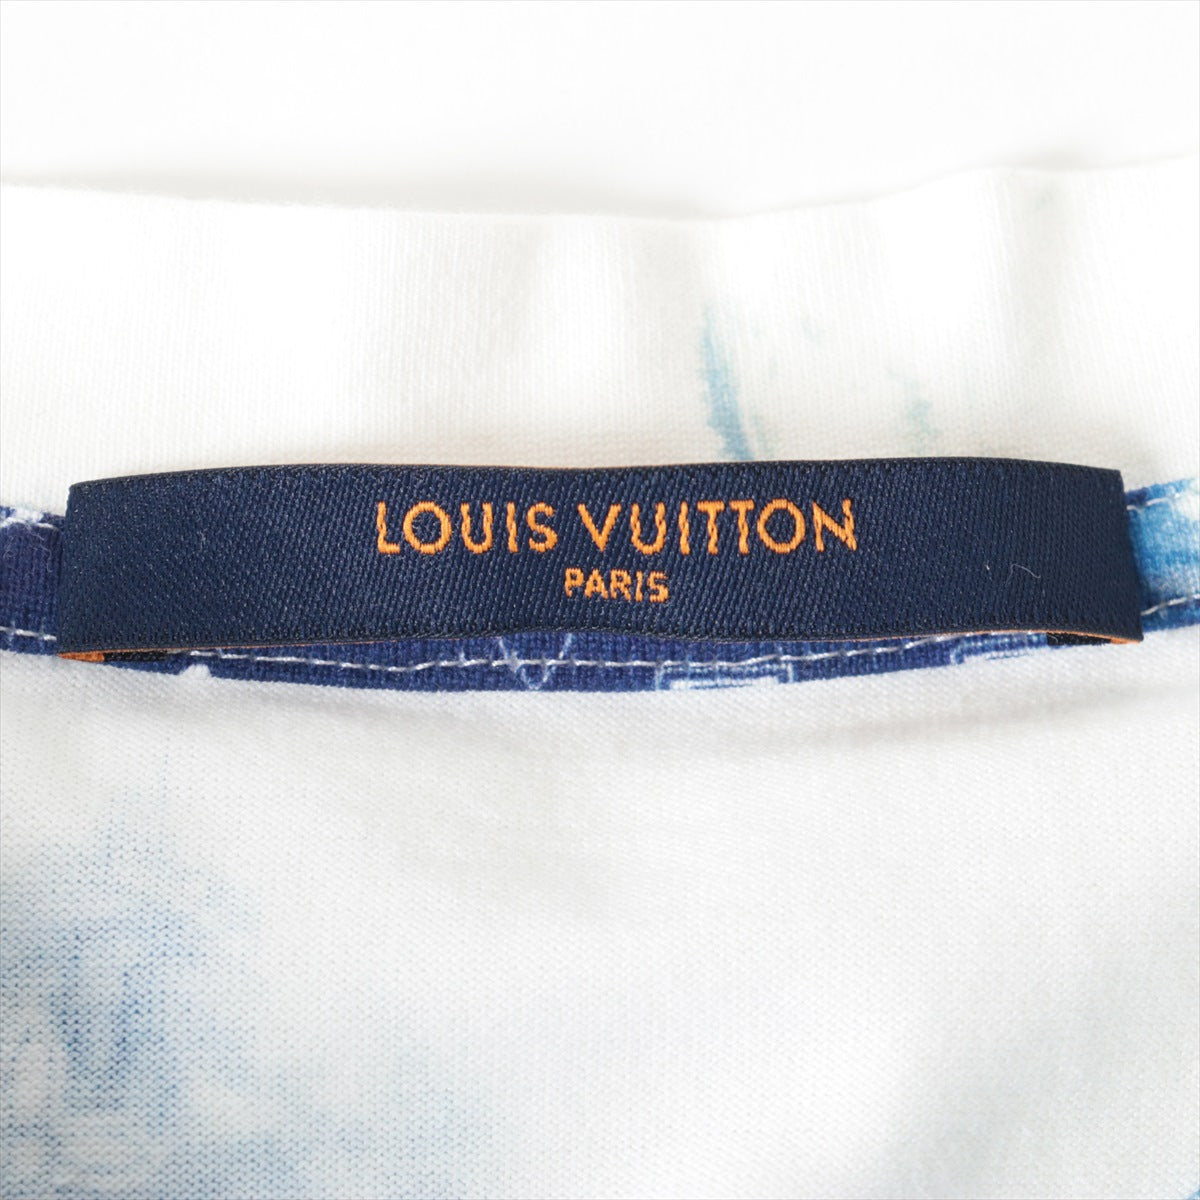 ルイヴィトン 22AW コットン Tシャツ XL メンズ ブルー×ホワイト  RM222M モノグラムバンダナ